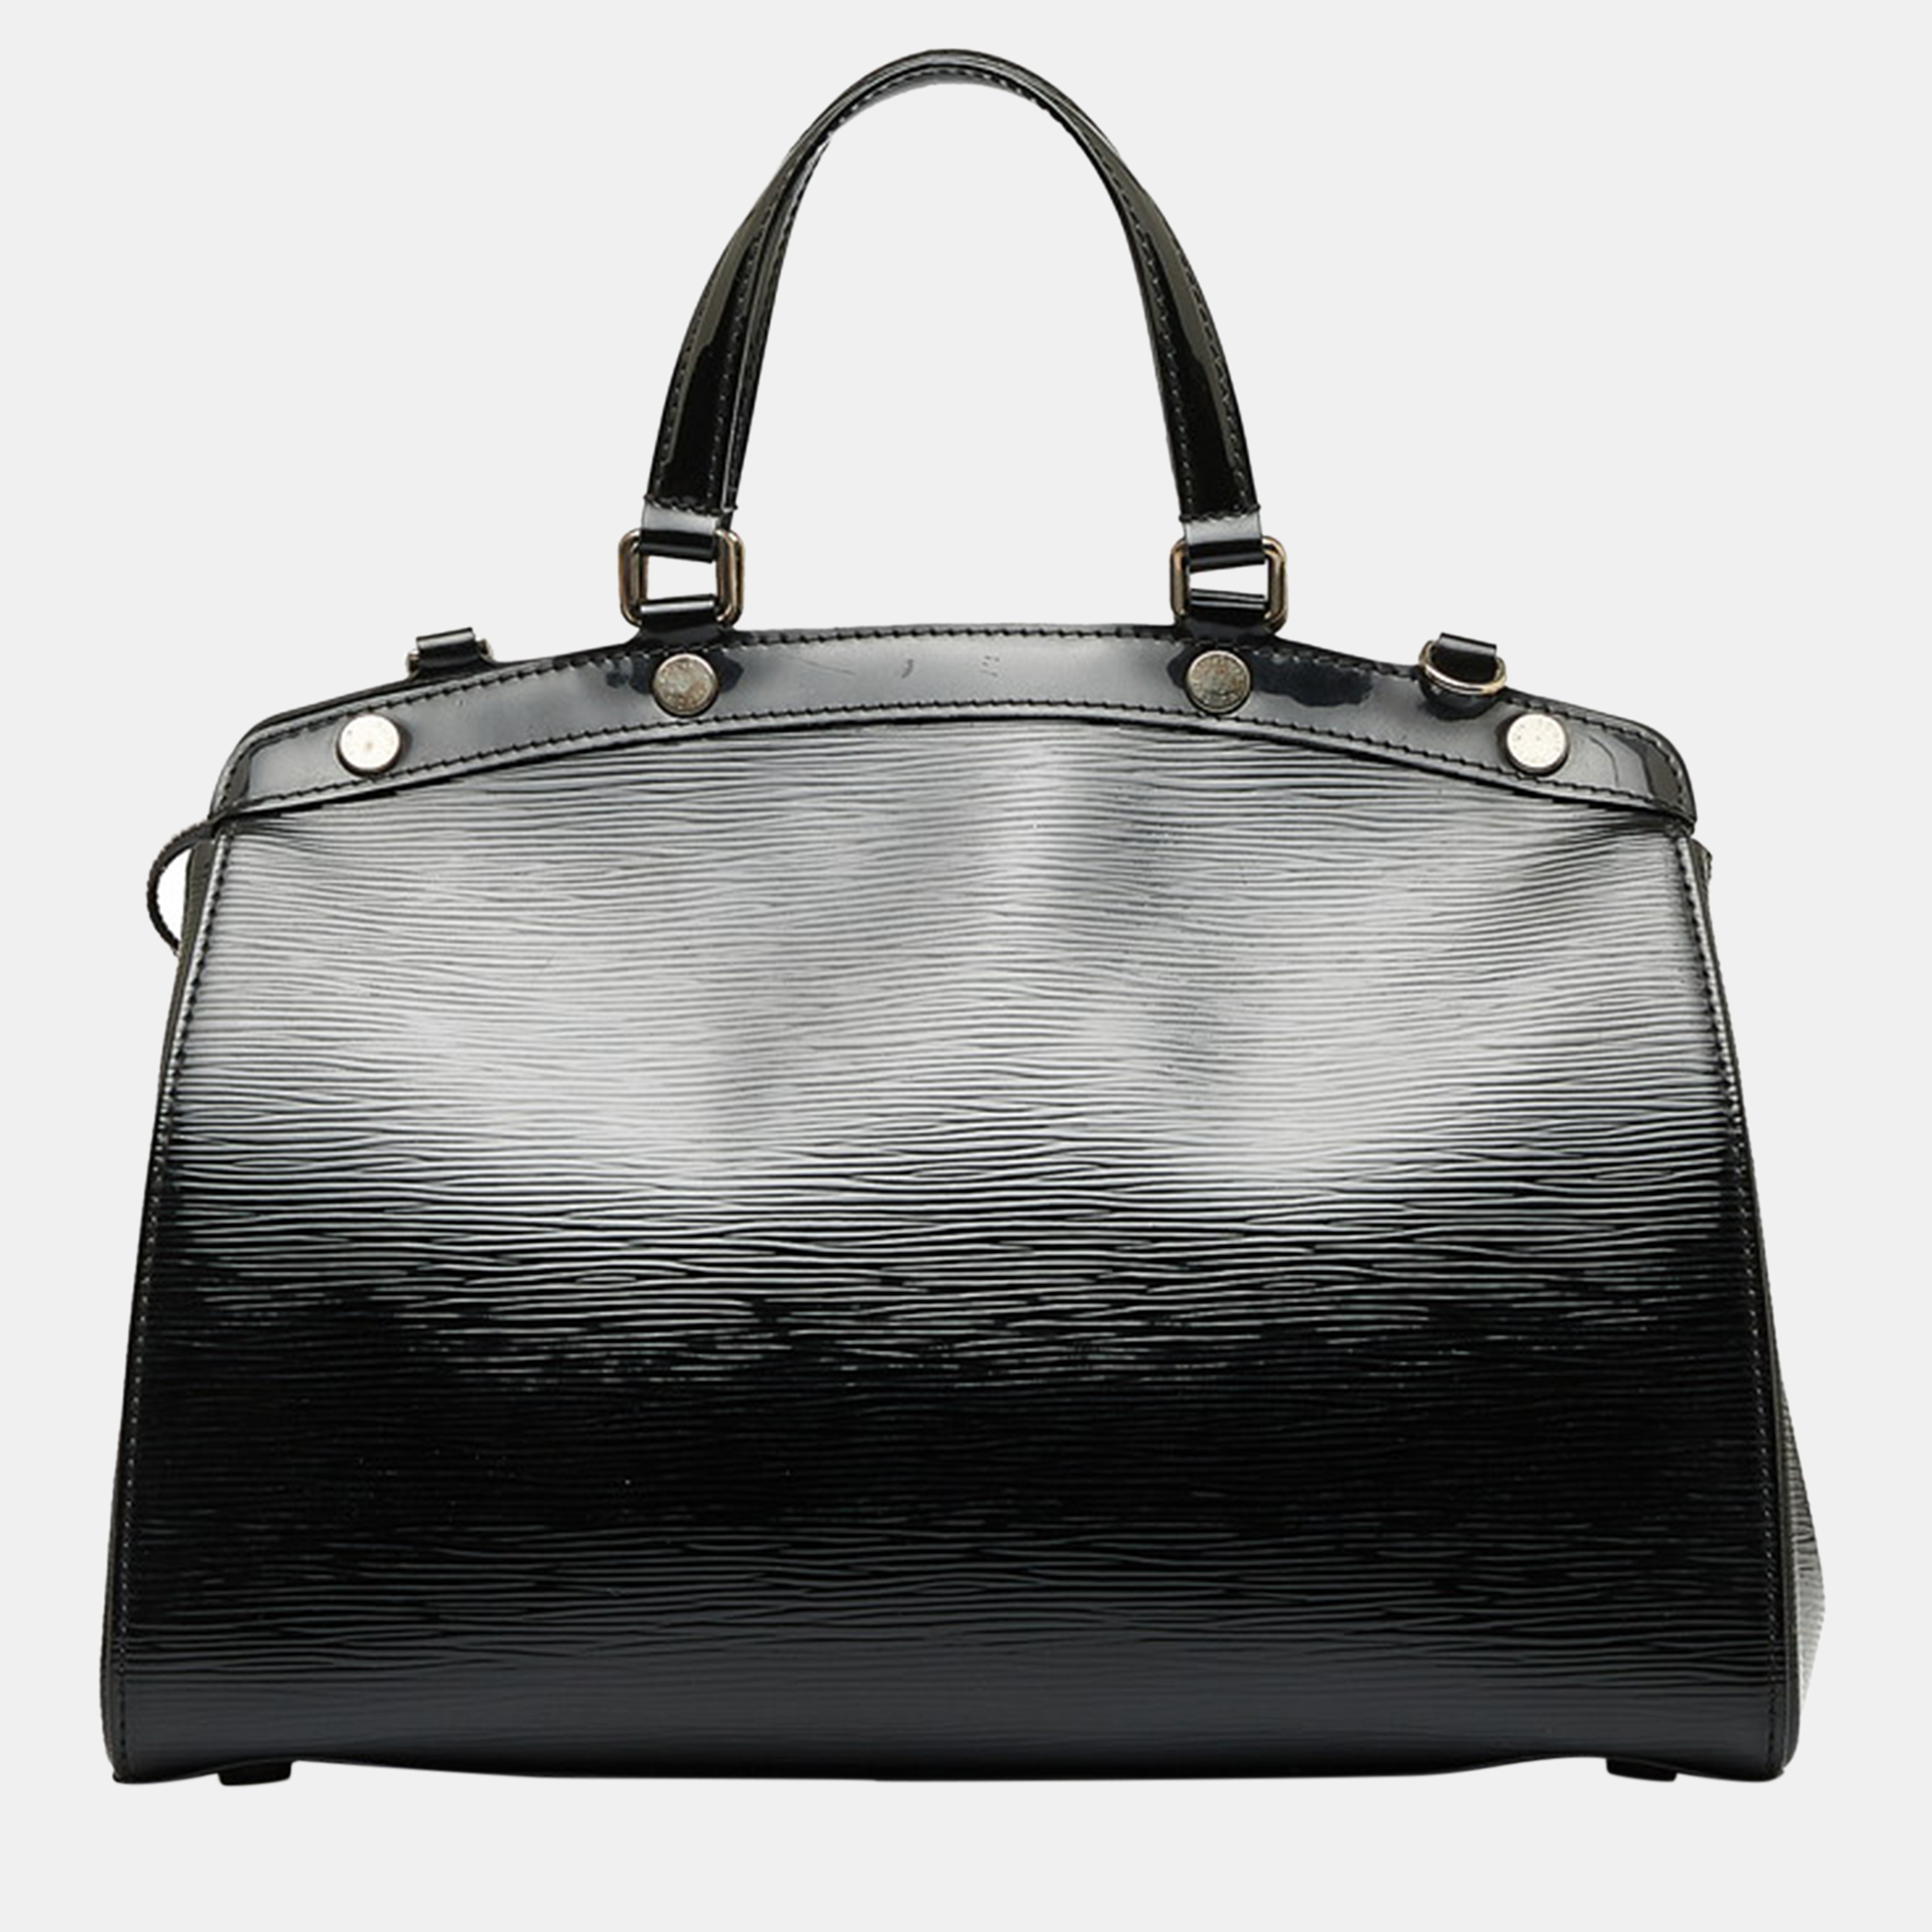 Louis Vuitton Black Leather Epi Brea MM Satchel Bag